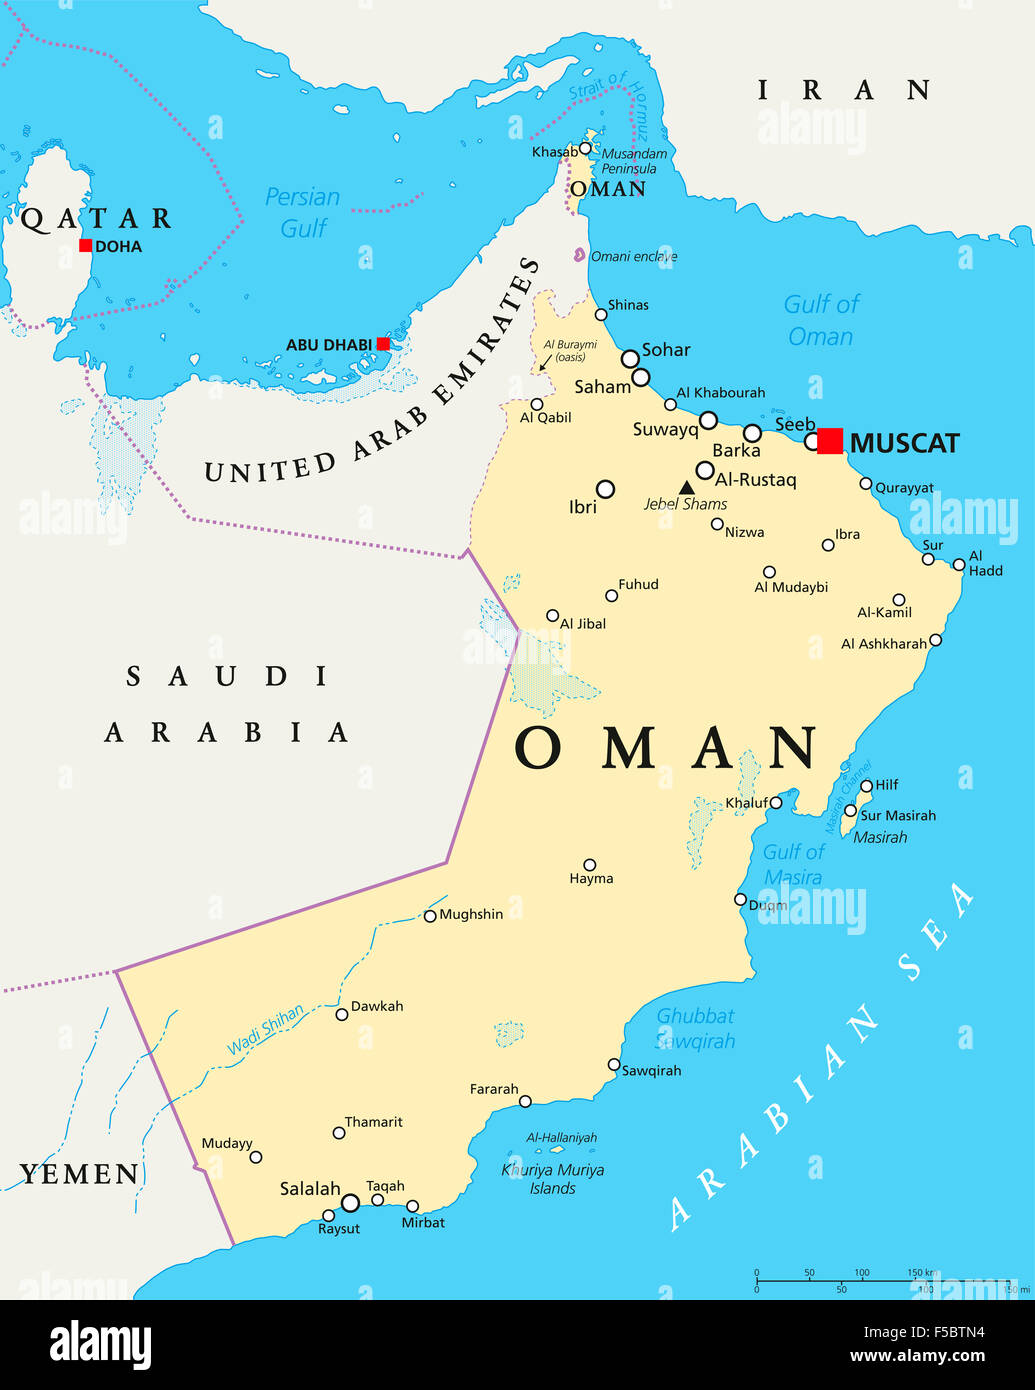 Oman mappa politico con capitale Muscat, i confini nazionali e importanti città. Etichetta inglese e la scala. Illustrazione. Foto Stock